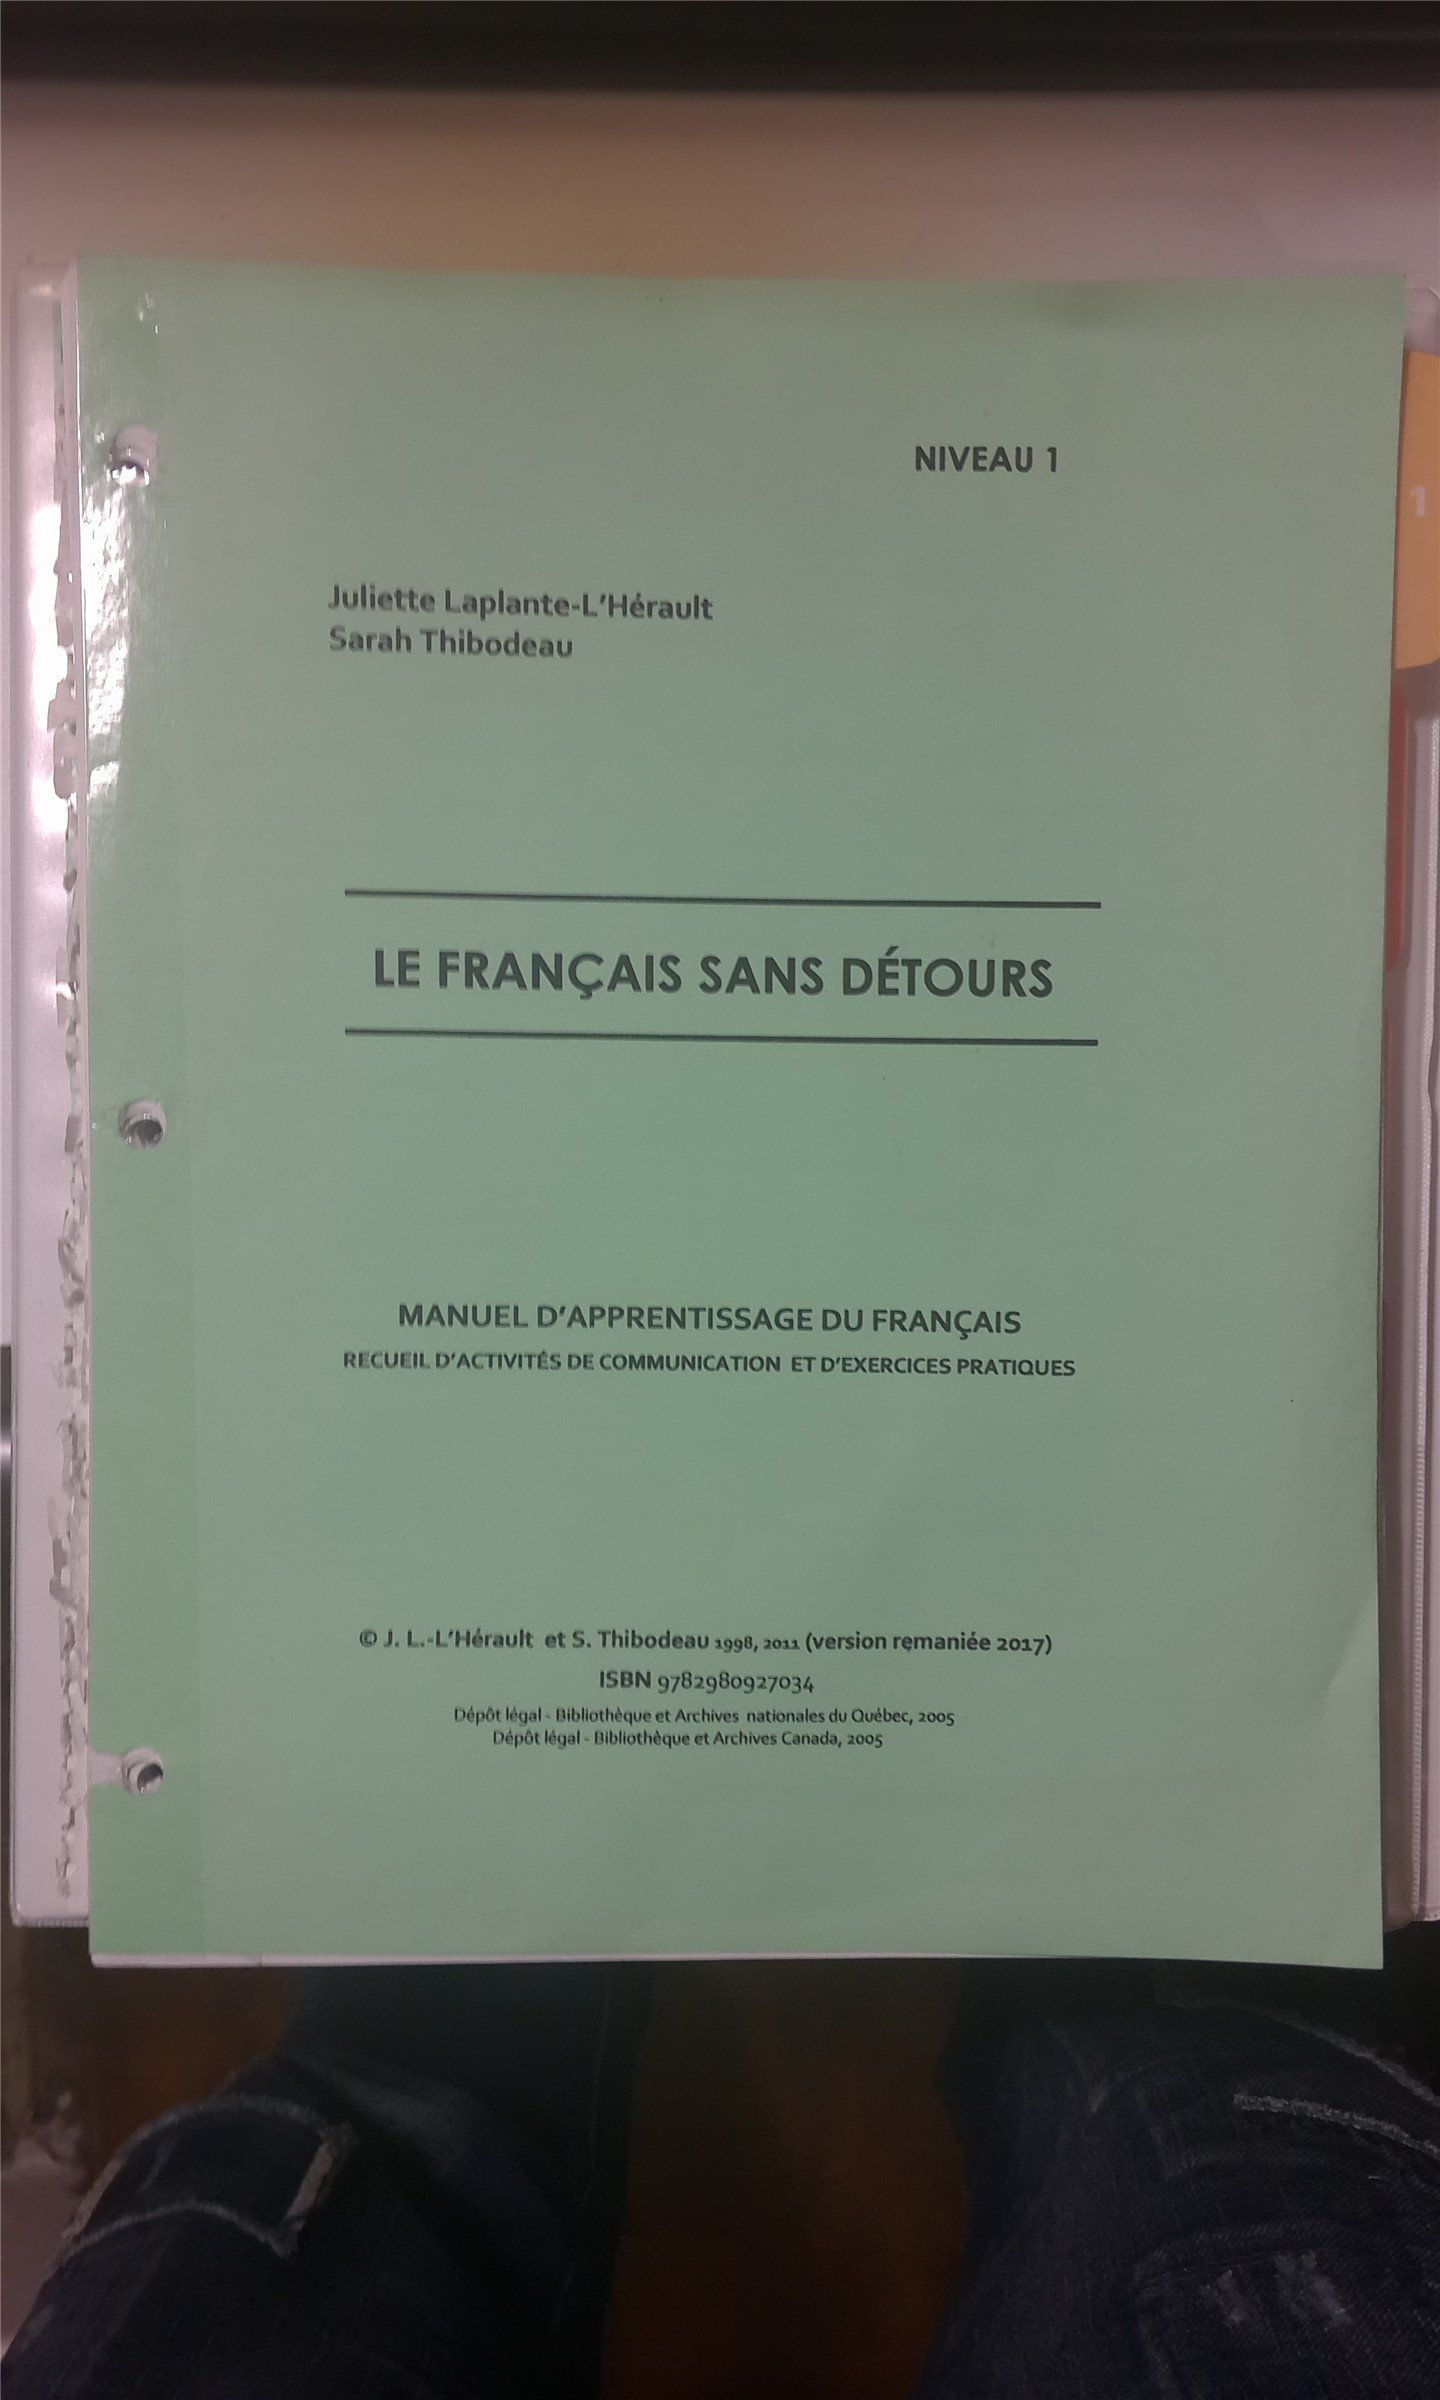   康大法语教材 - 《Le Francais sans detours》(附带课堂PPT)： CAD20